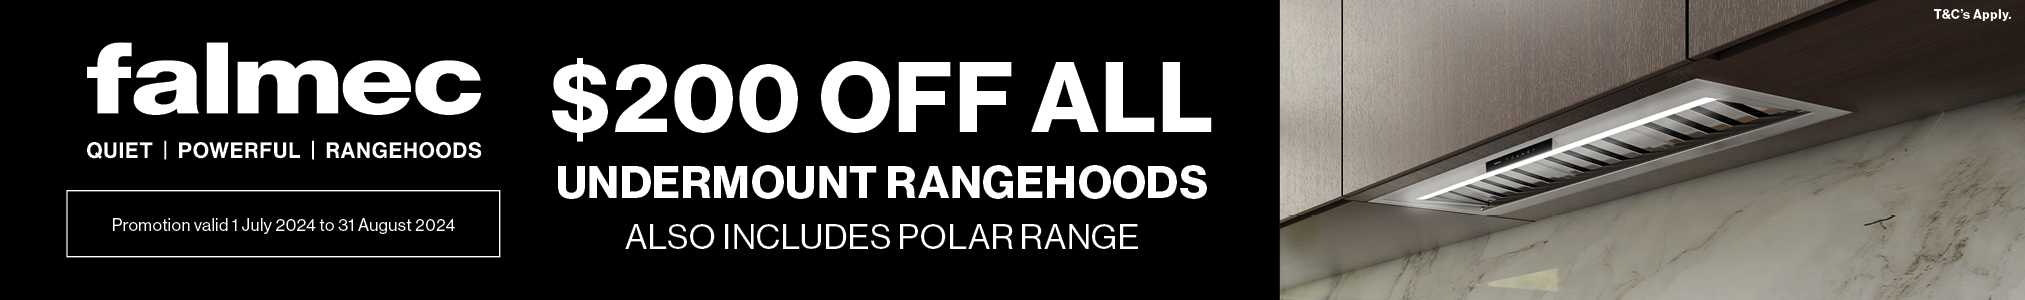 $200 Off All Falmec Undermount Rangehoods Including Polar Range*